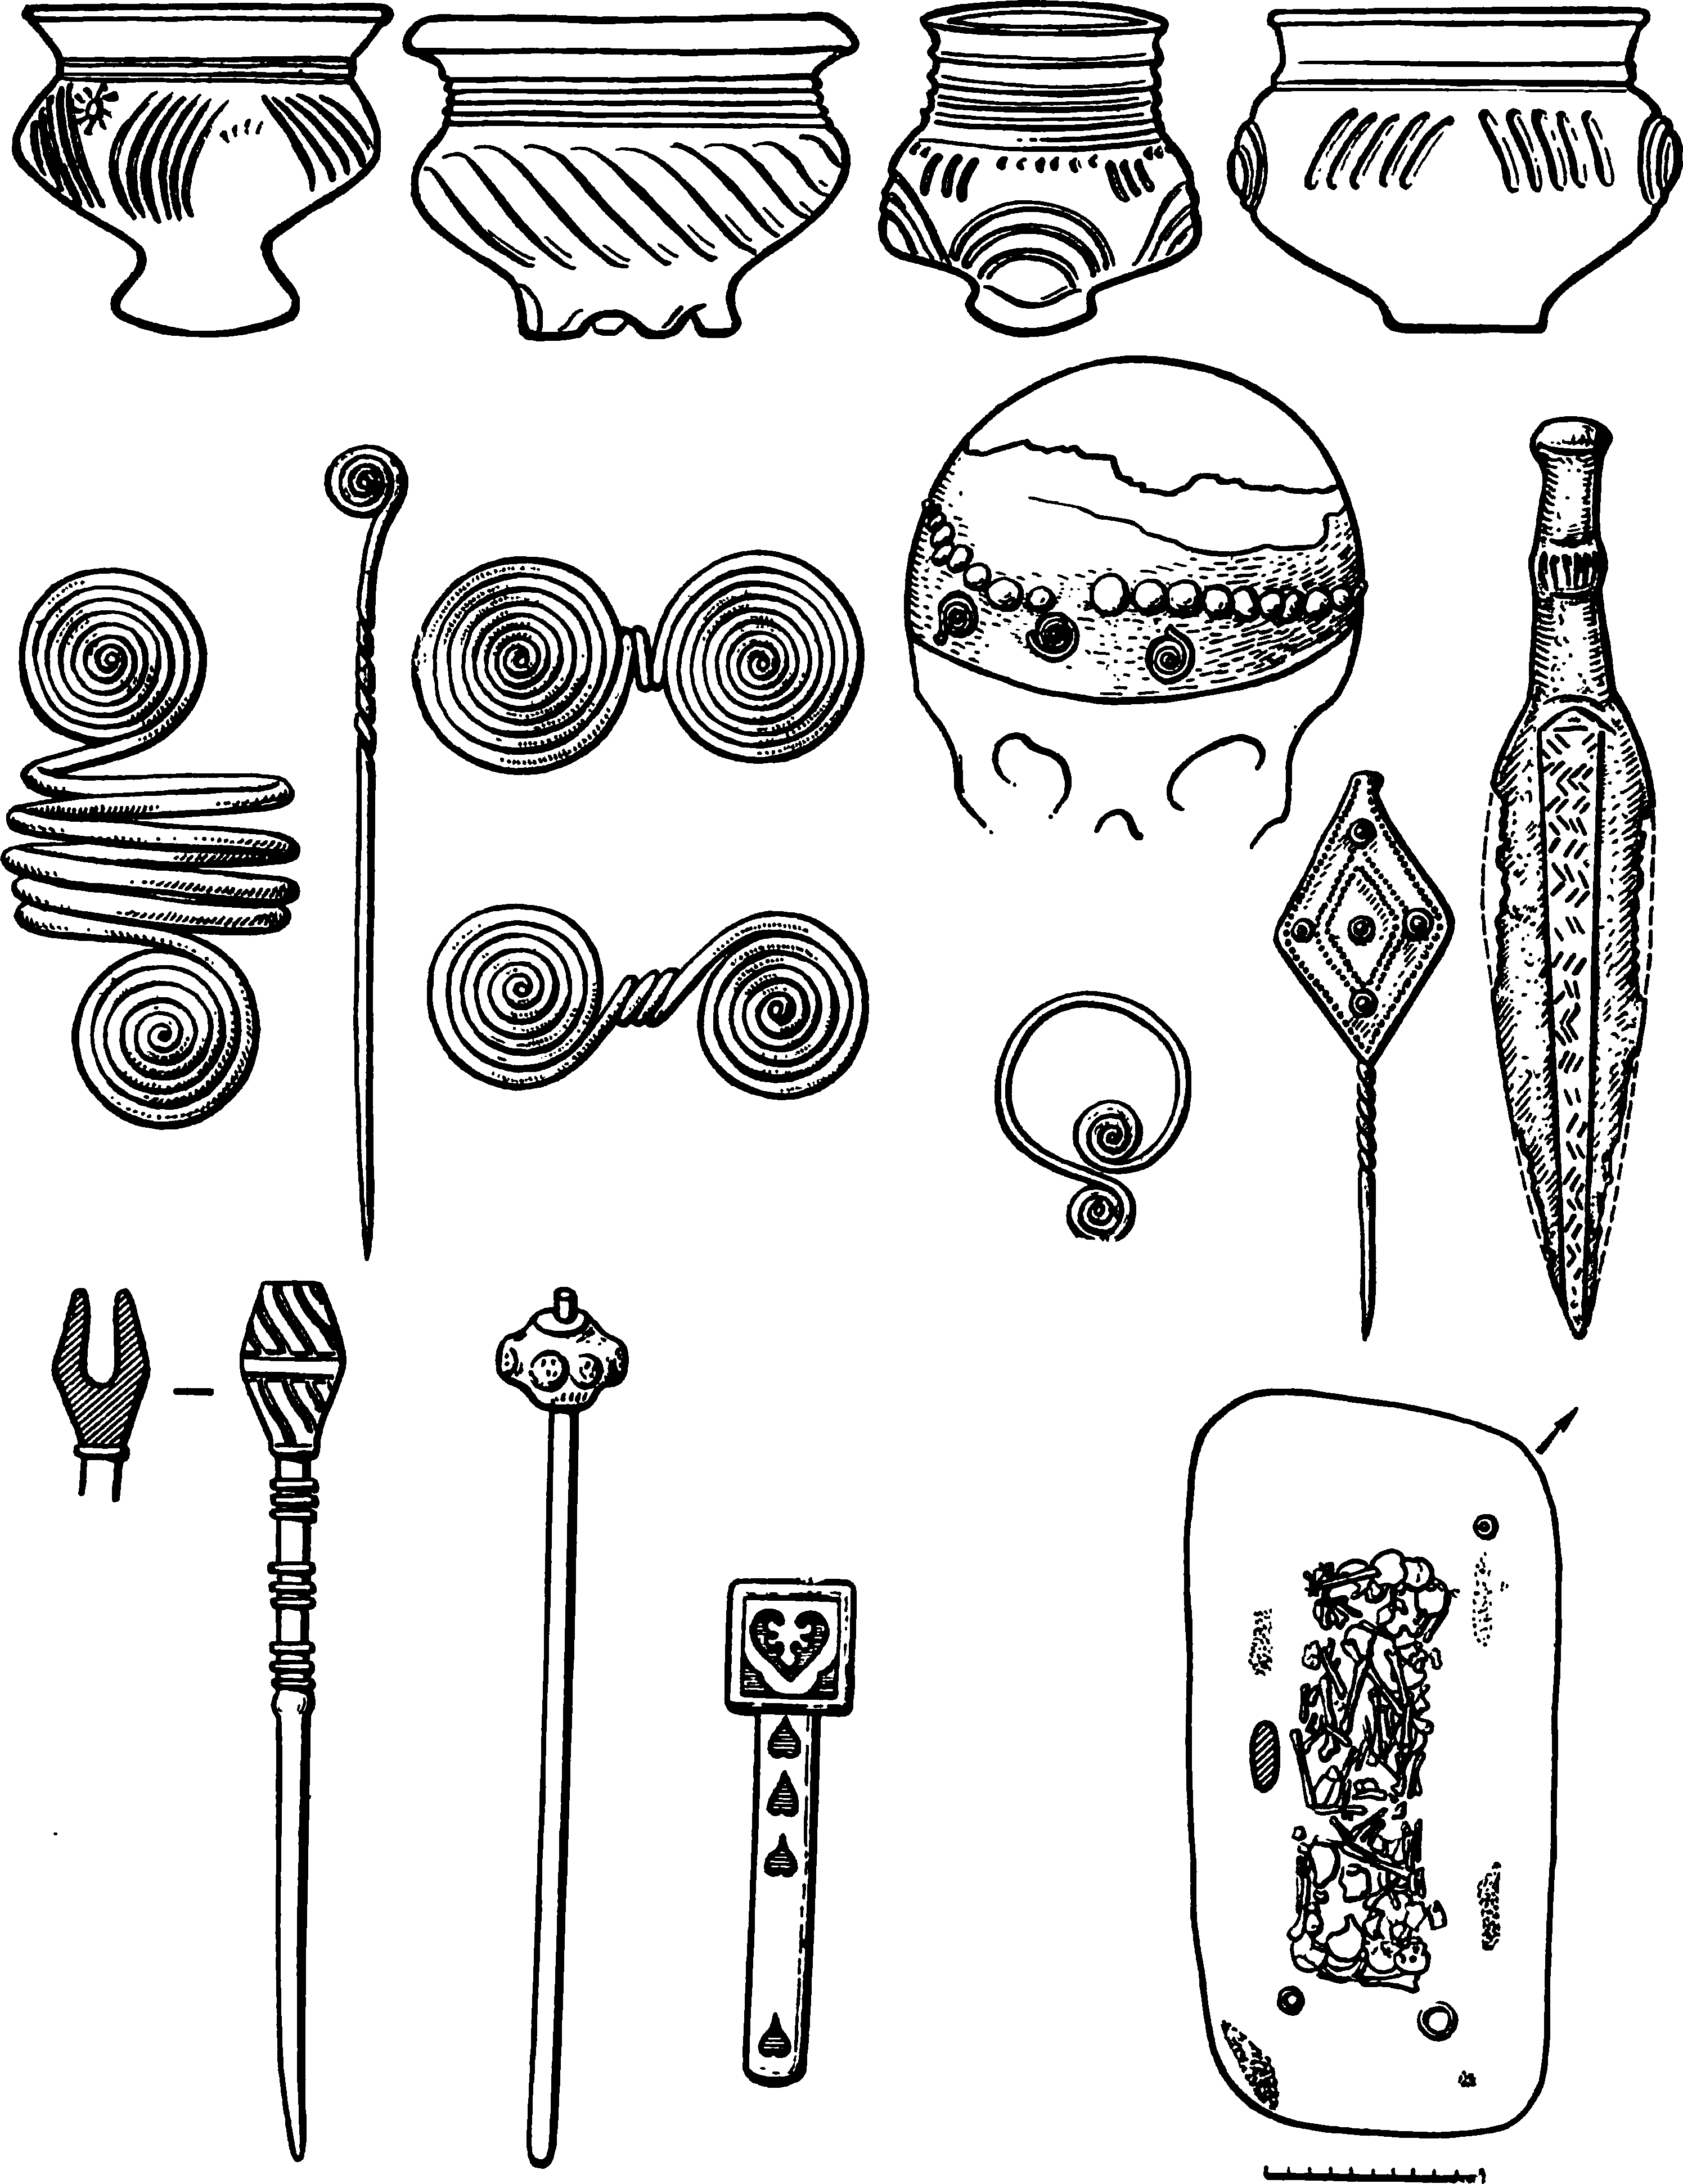 Предметы из могил древних славян XV—XIII вв. до н. э. (тшинецкая культура)